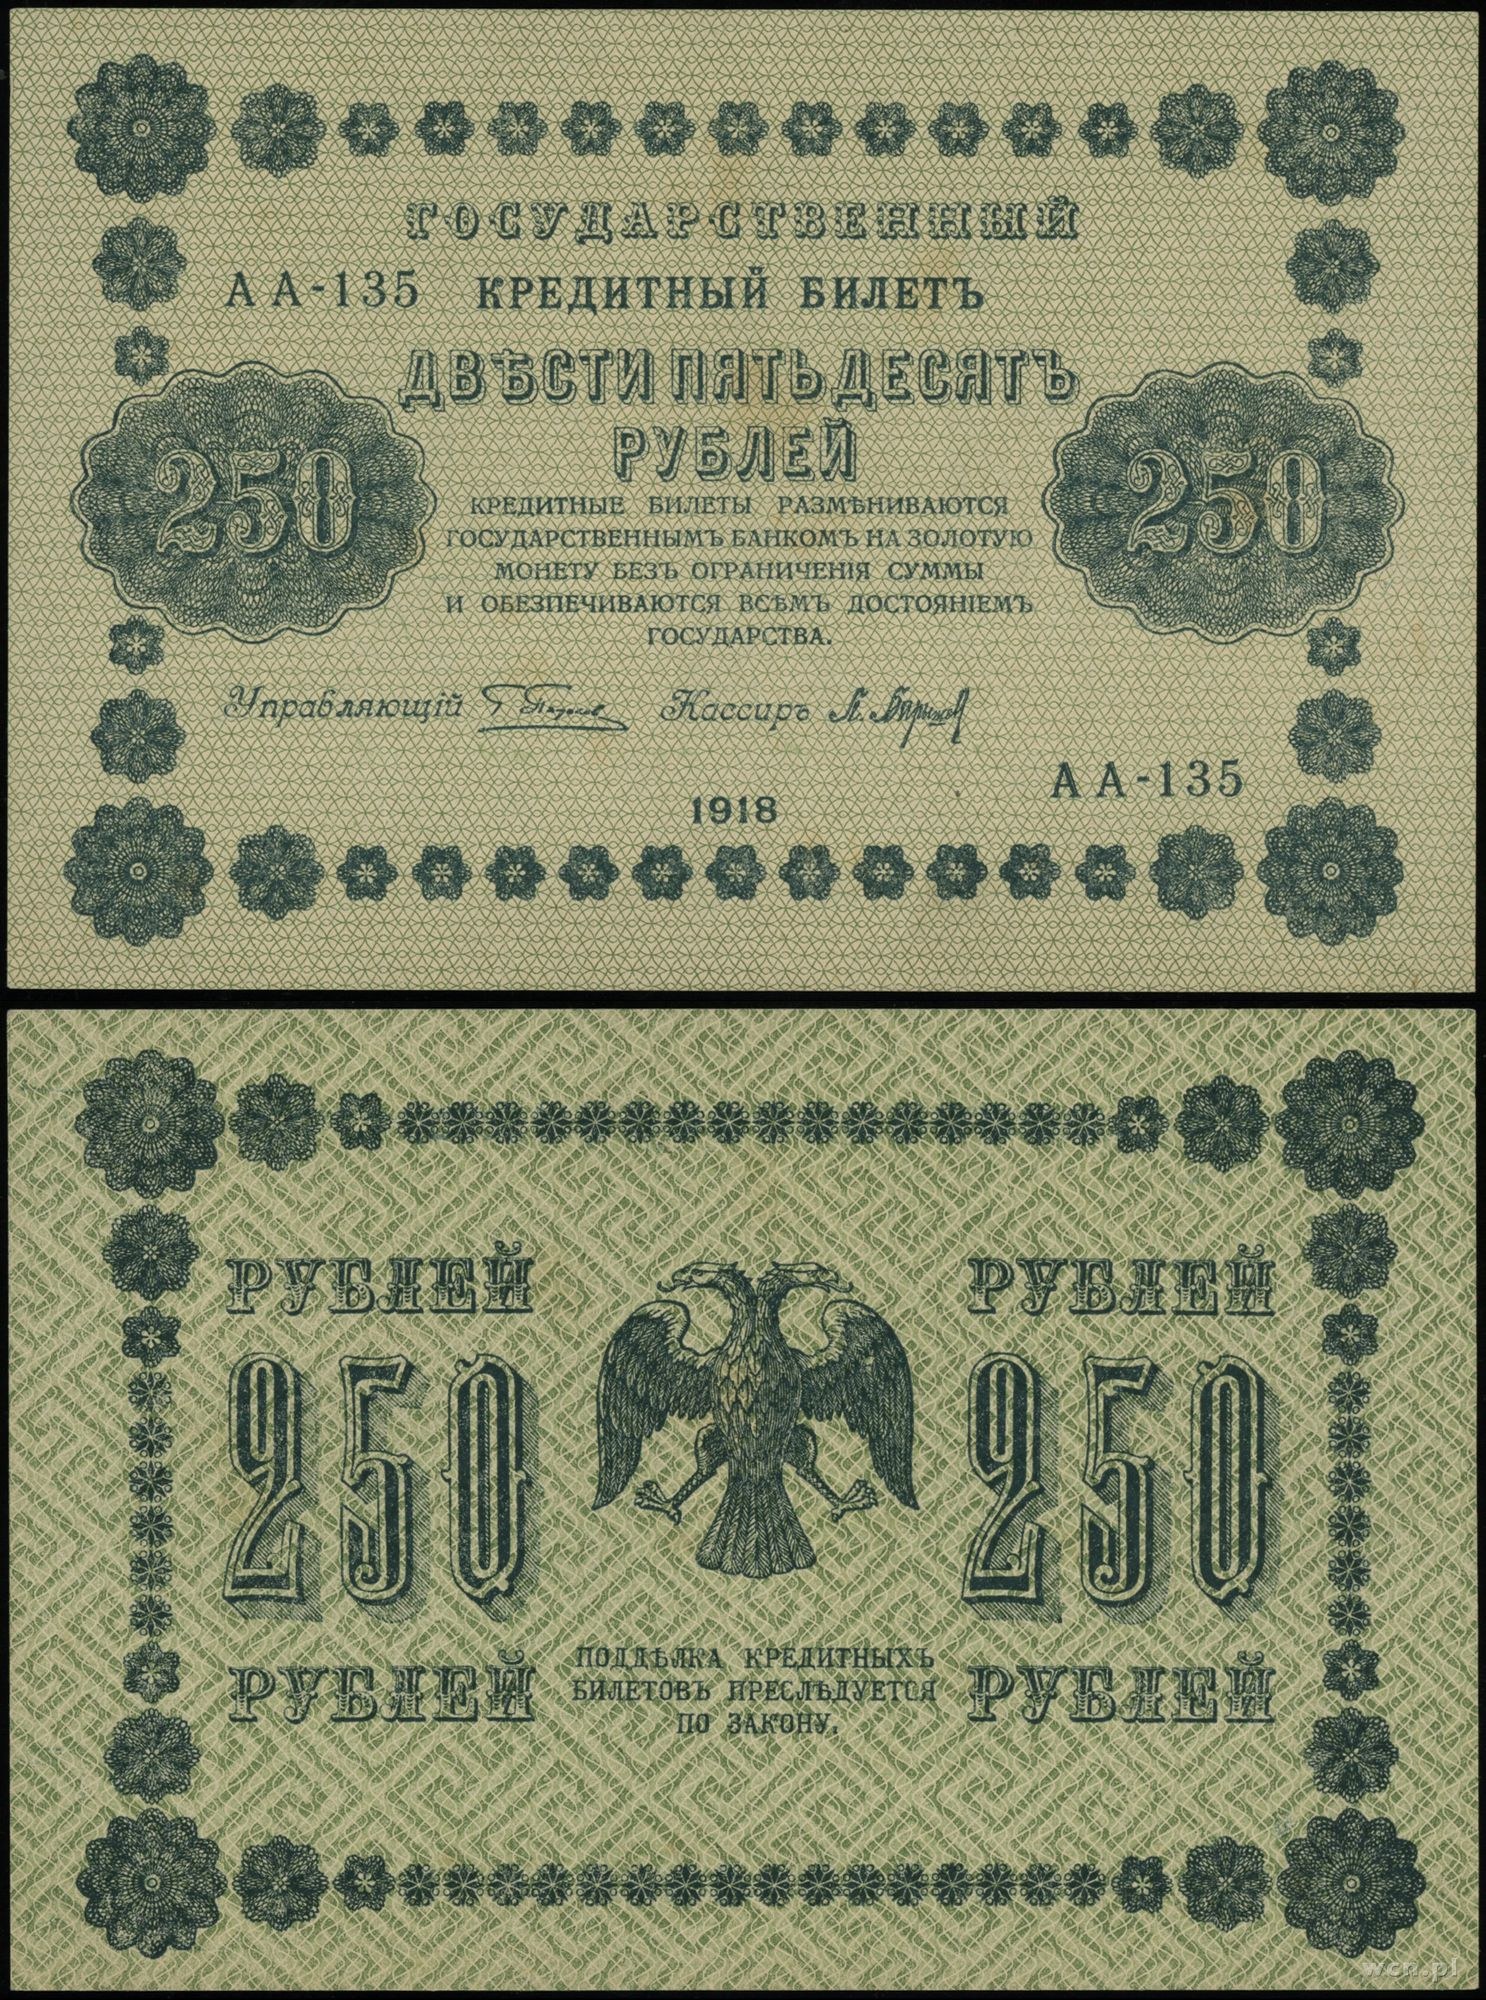 Двести пятьдесят первого. 250 Рублей 1918 года. Банкнота 250 рублей 1918. Купюра 250 рублей 1918 года. Бумажные рубли 1918 года.